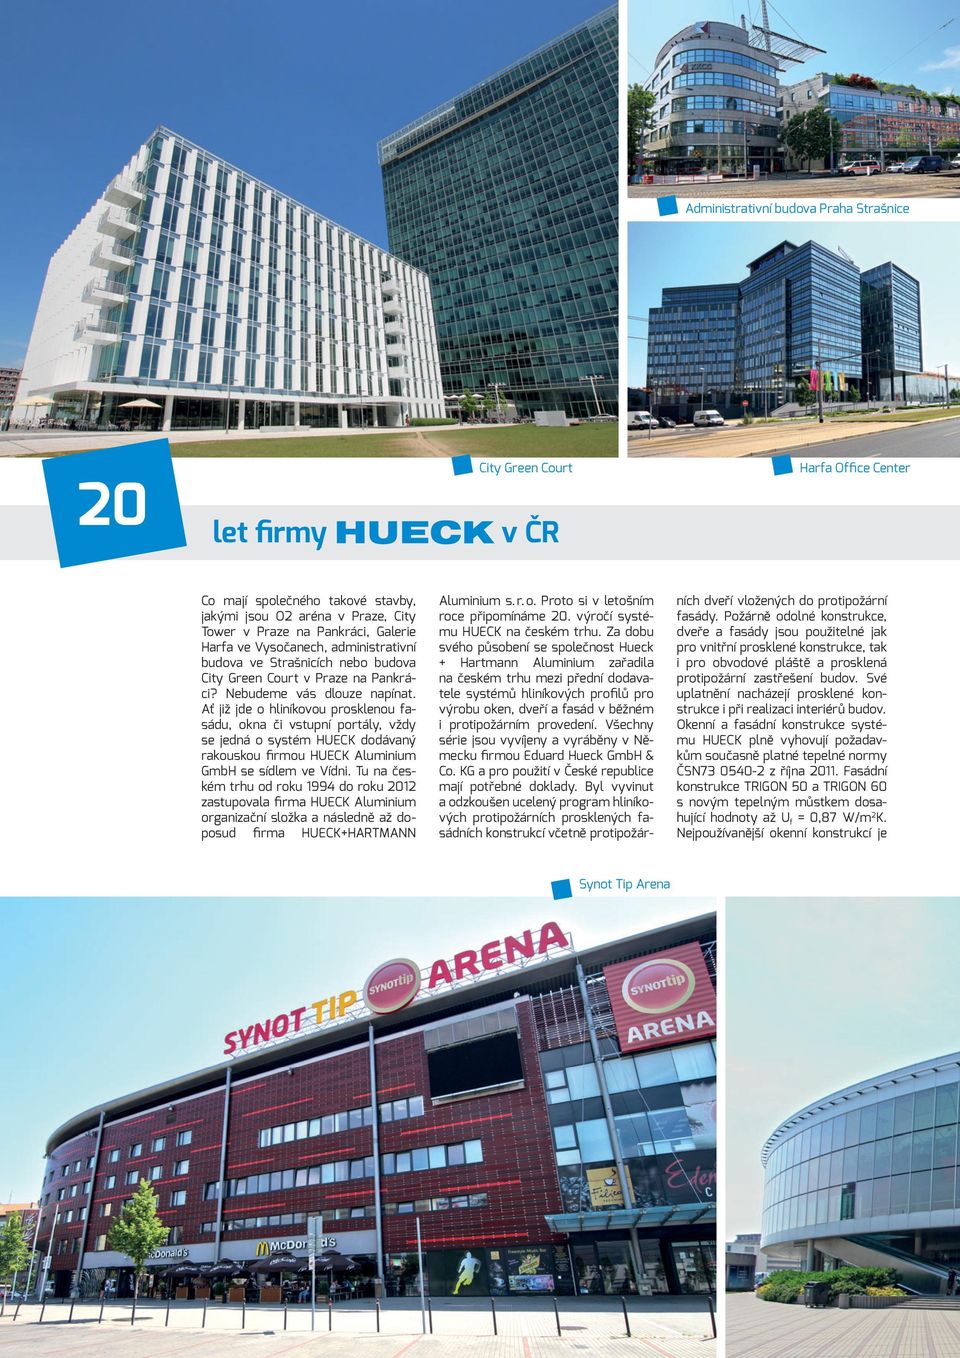 Ať již jde o hliníkovou prosklenou fasádu, okna či vstupní portály, vždy se jedná o systém HUECK dodávaný rakouskou firmou HUECK Aluminium GmbH se sídlem ve Vídni.